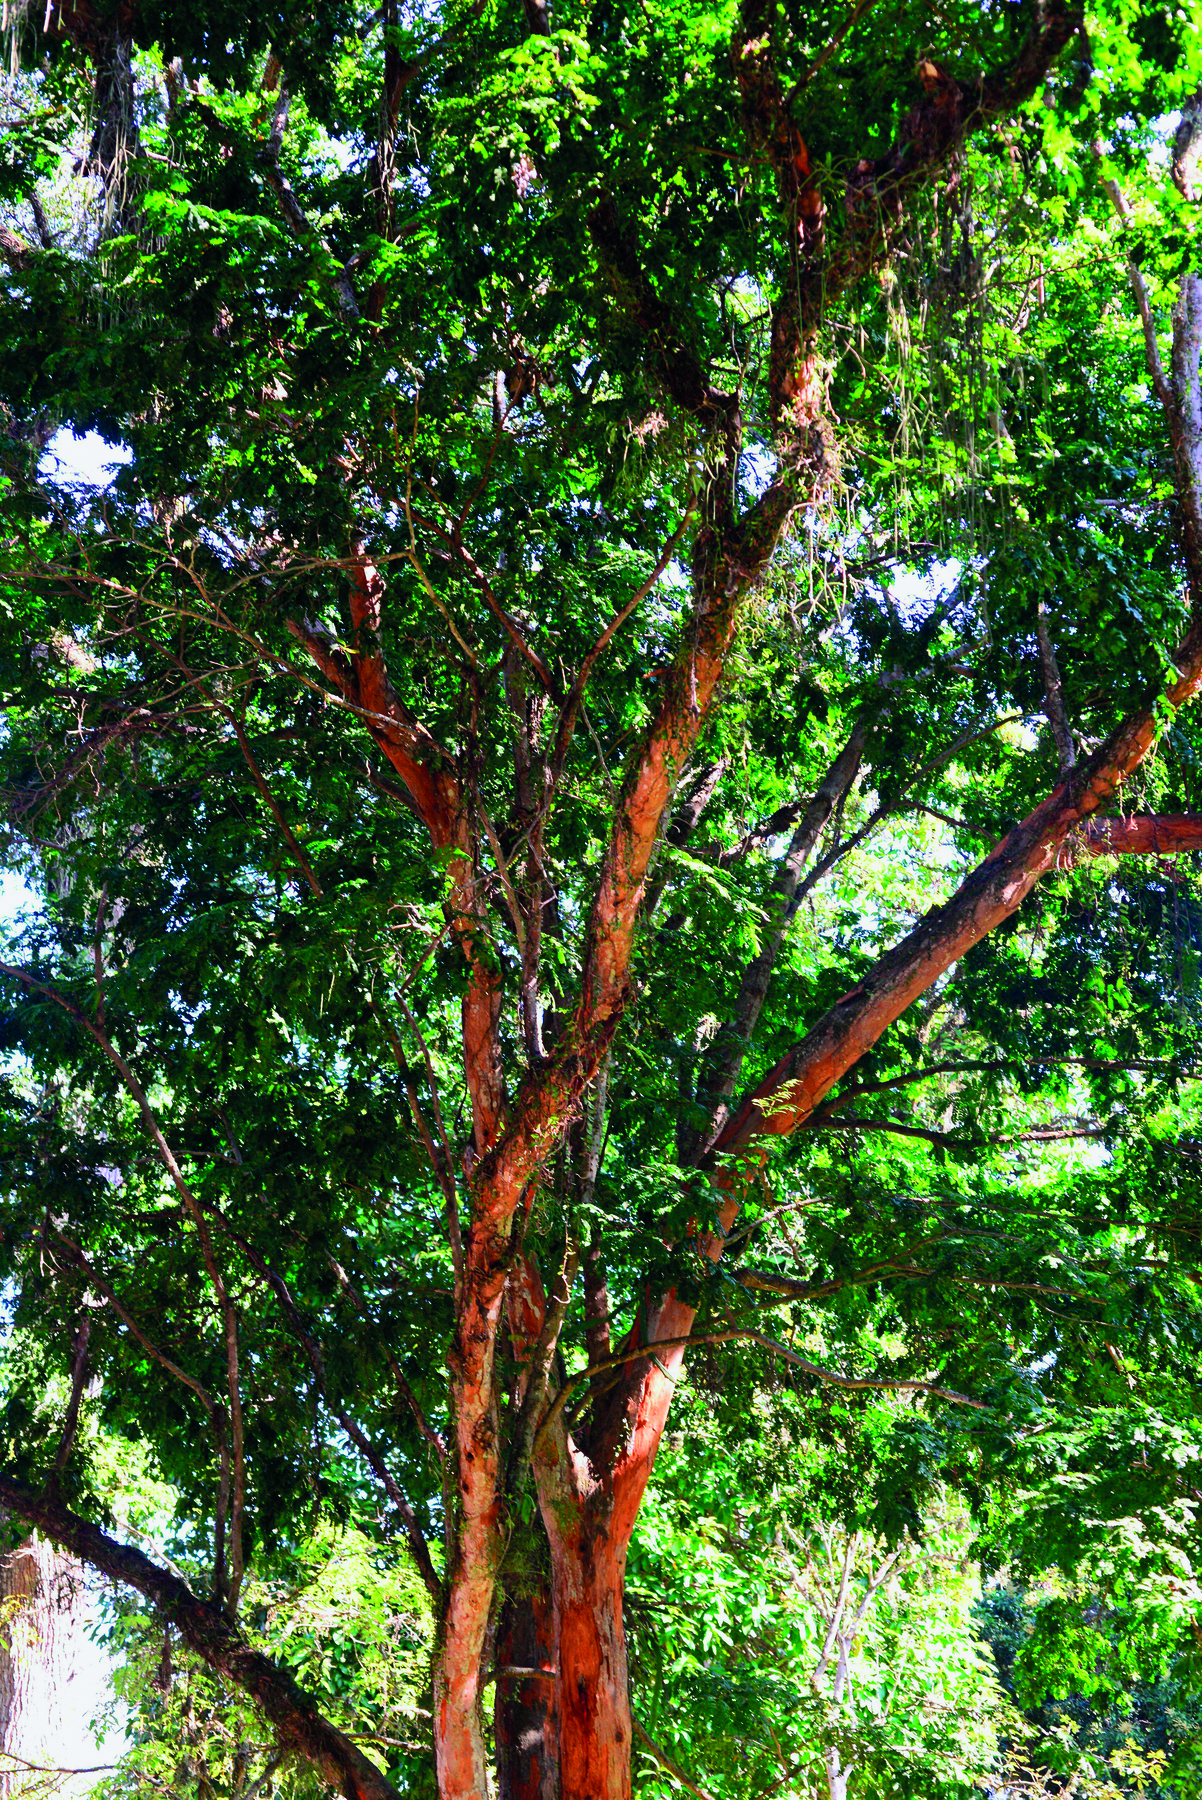 Fotografia. Destaque para árvore com galhos finos, altos e levemente retorcidos. Possui folhas verdes numerosas.